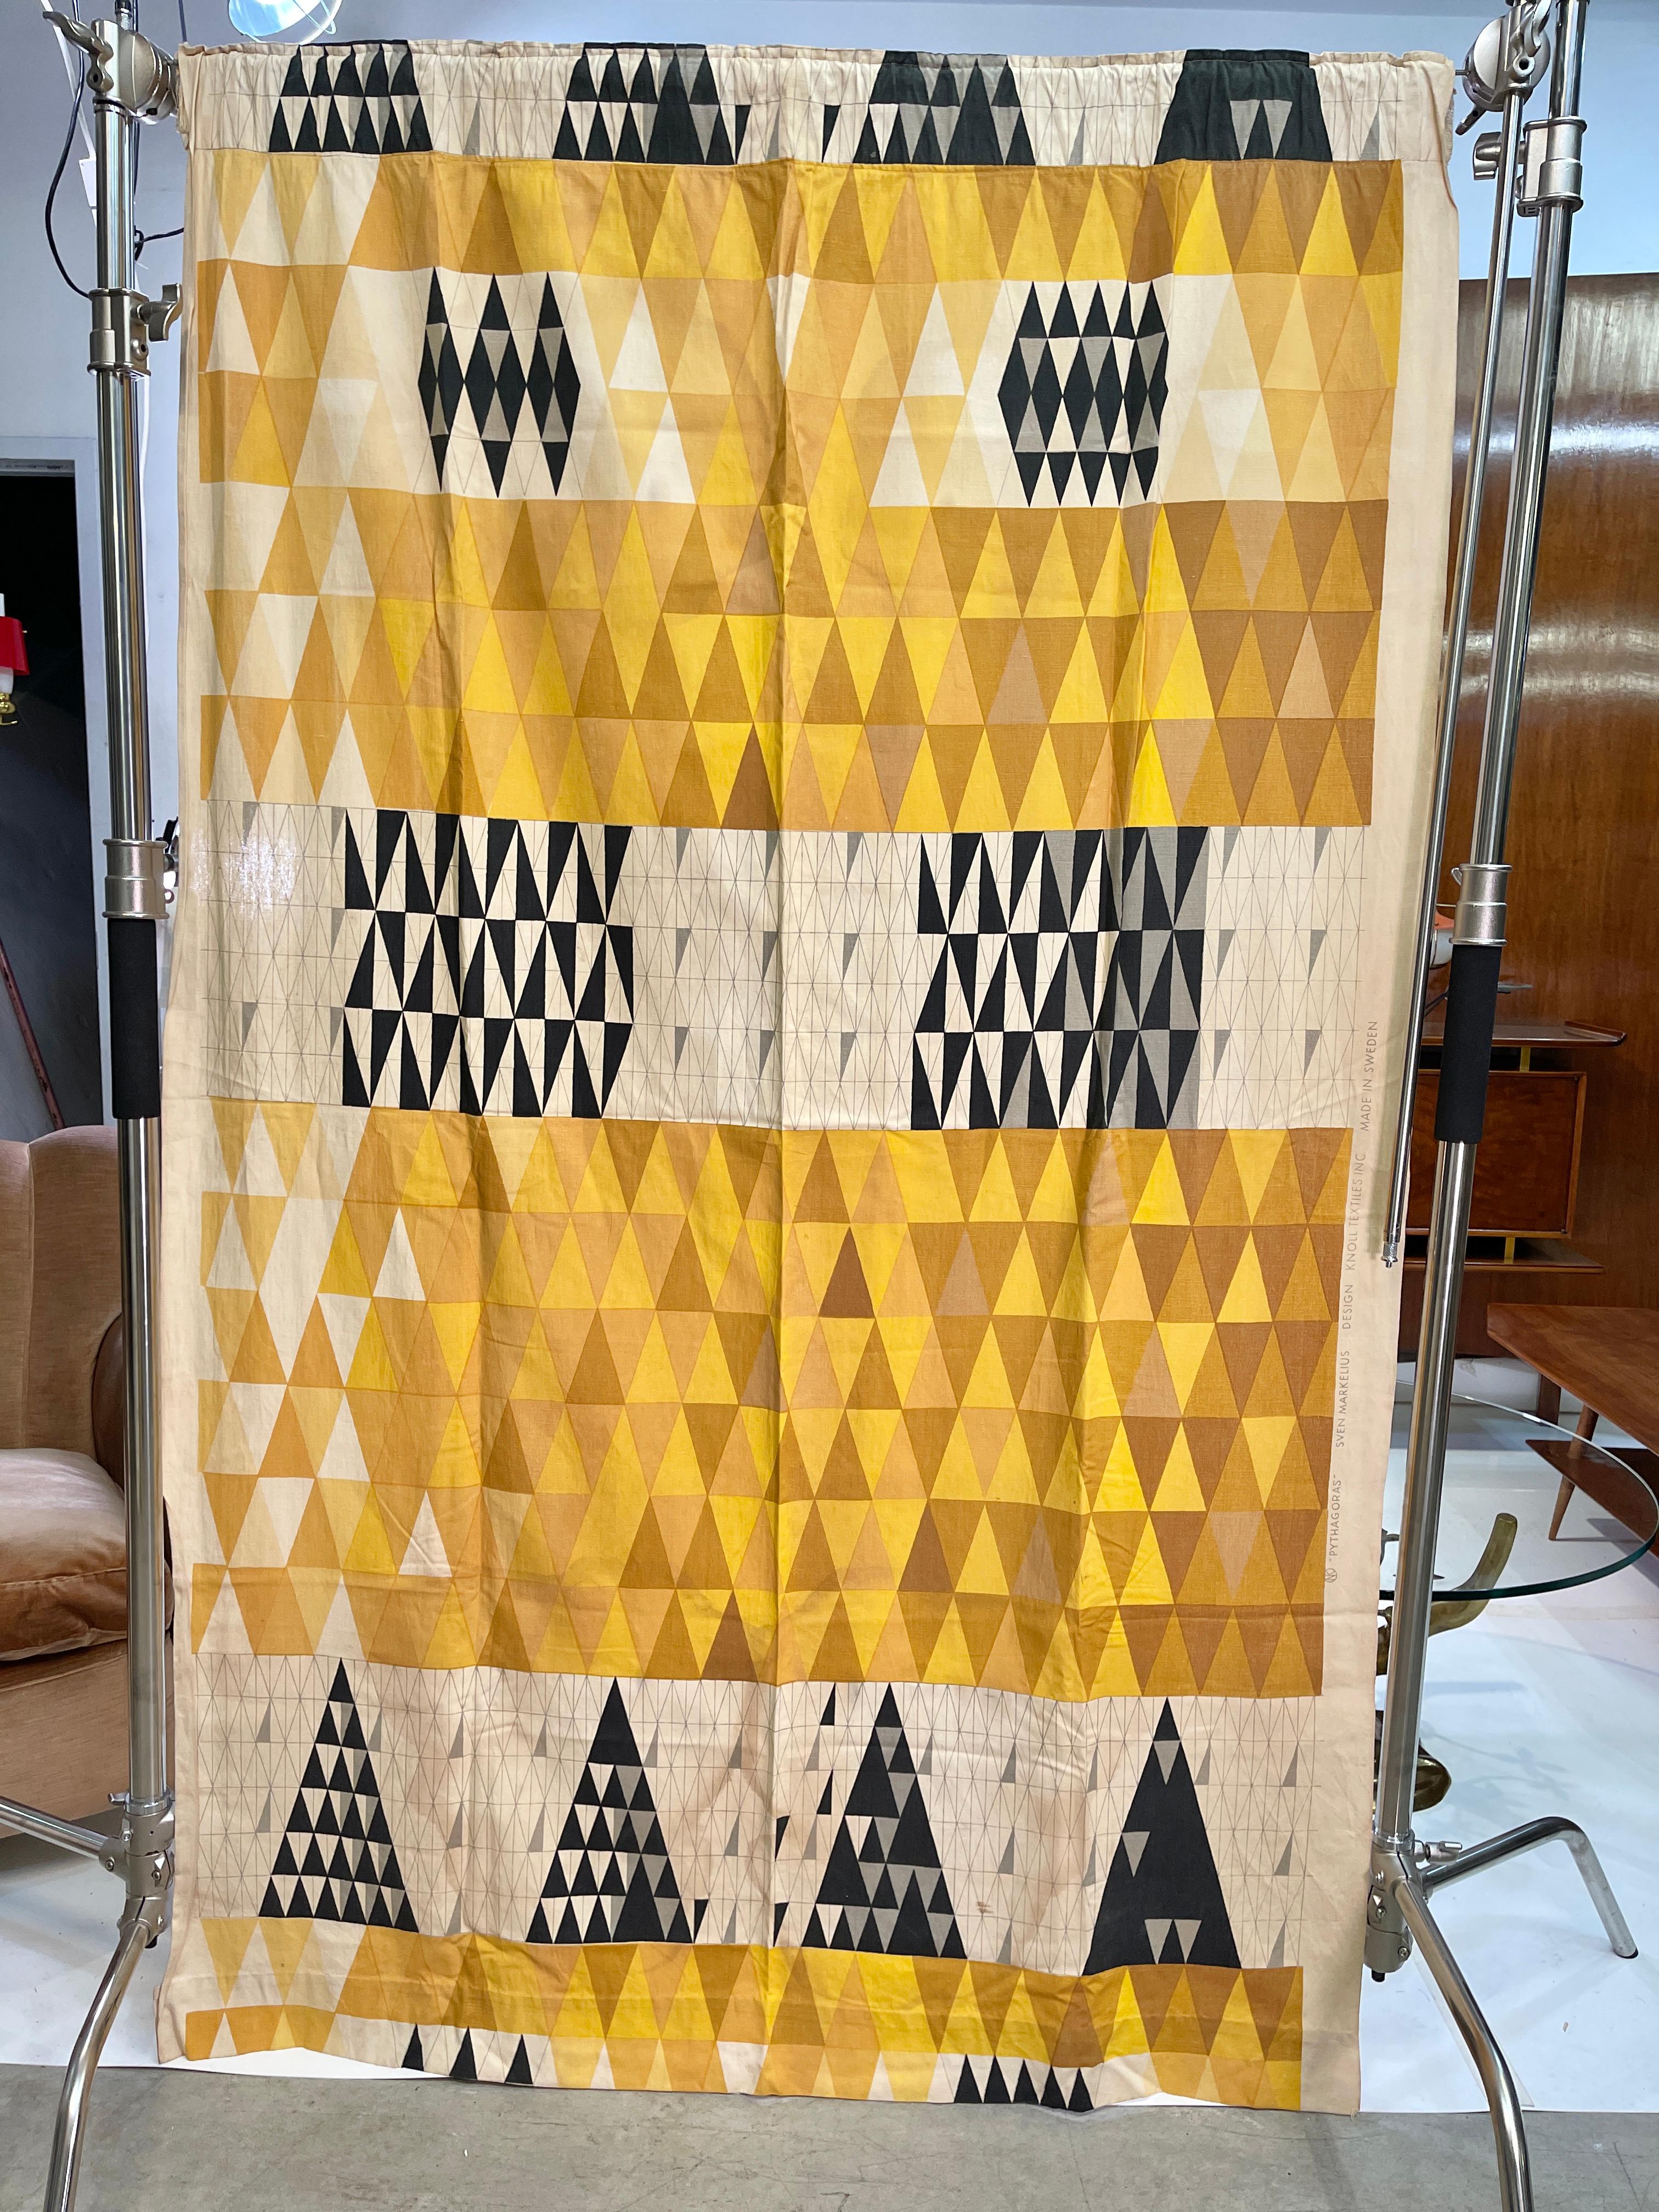 Sven Markelius (1889-1970), panneau de draperie Pythagore produit en 1952 par Ljungberg's Textile AB, Suède pour Knoll Associates, New York, NY.
Les dimensions globales sont de 77 pouces de haut par 50 pouces de large, y compris la lisière